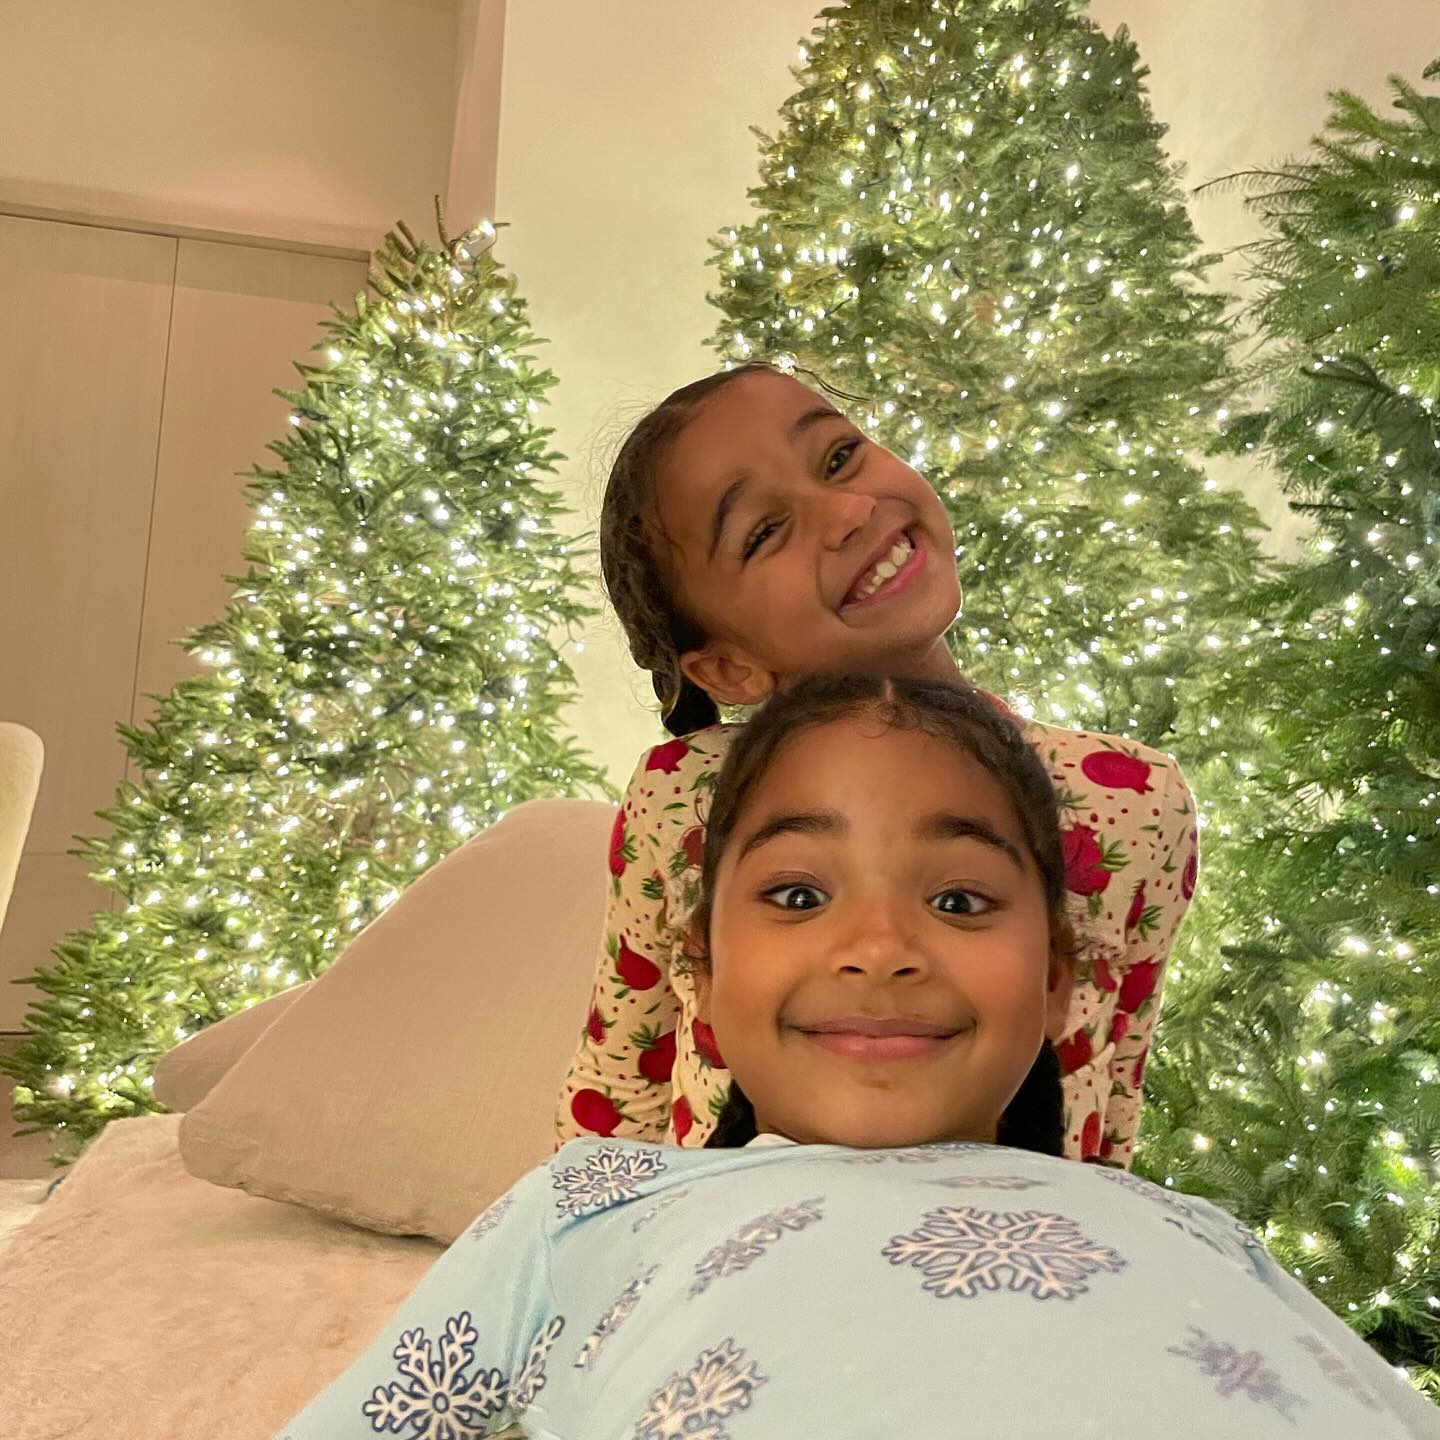 Η Khloé Kardashian επιδεικνύει την εντυπωσιακή χριστουγεννιάτικη διακόσμηση του σπιτιού της